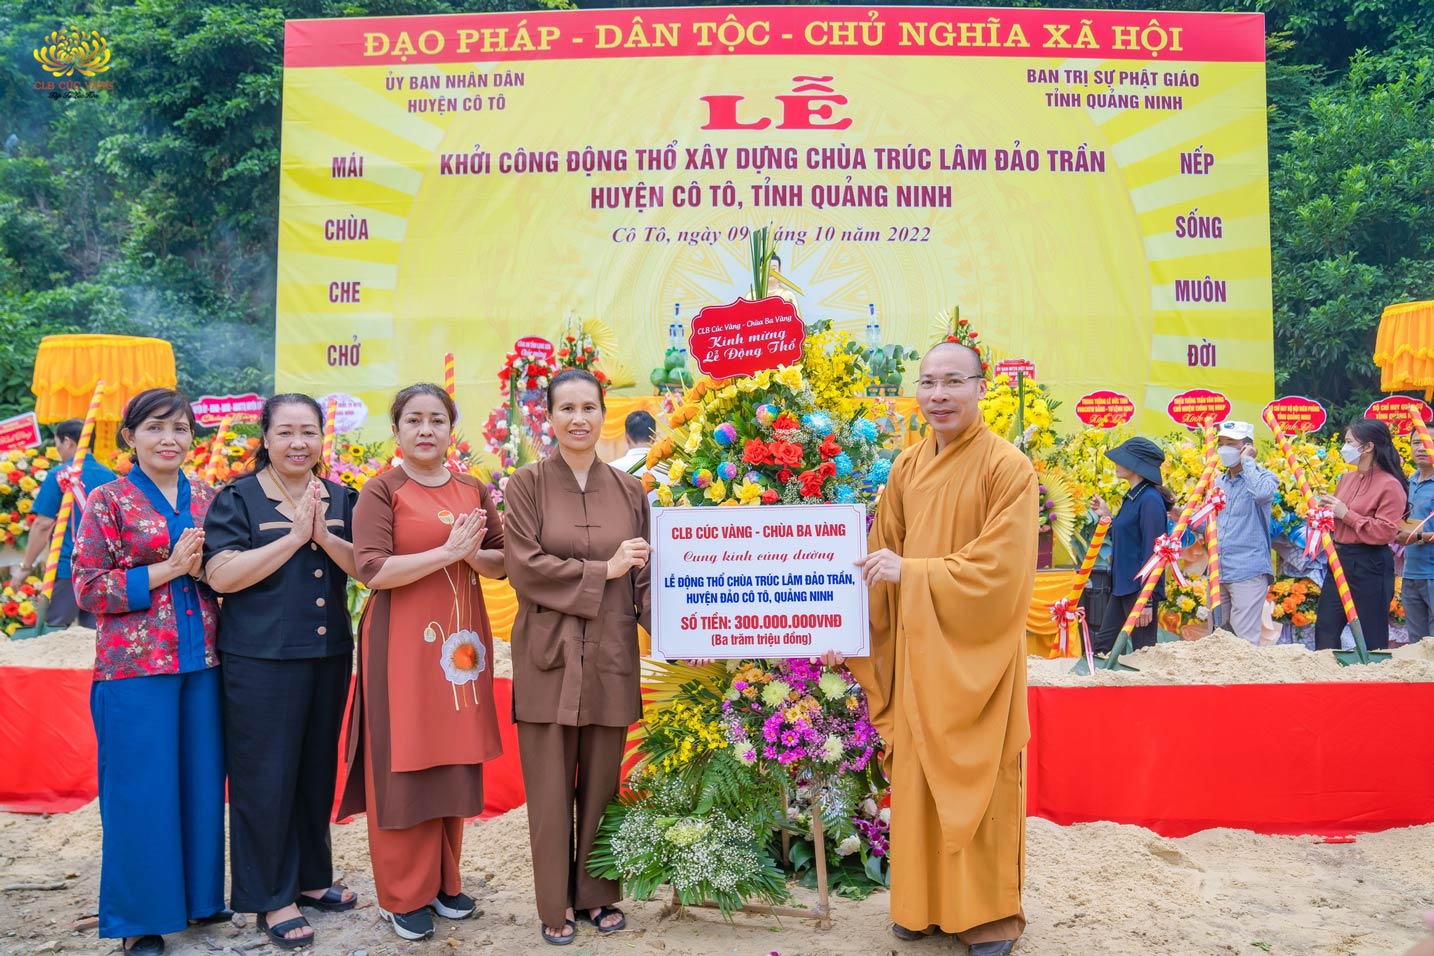 Phật tử CLB Cúc Vàng cúng dường 300 triệu đồng tới chùa Trúc Lâm Đảo Trần, Cô Tô nhân lễ khởi công xây dựng